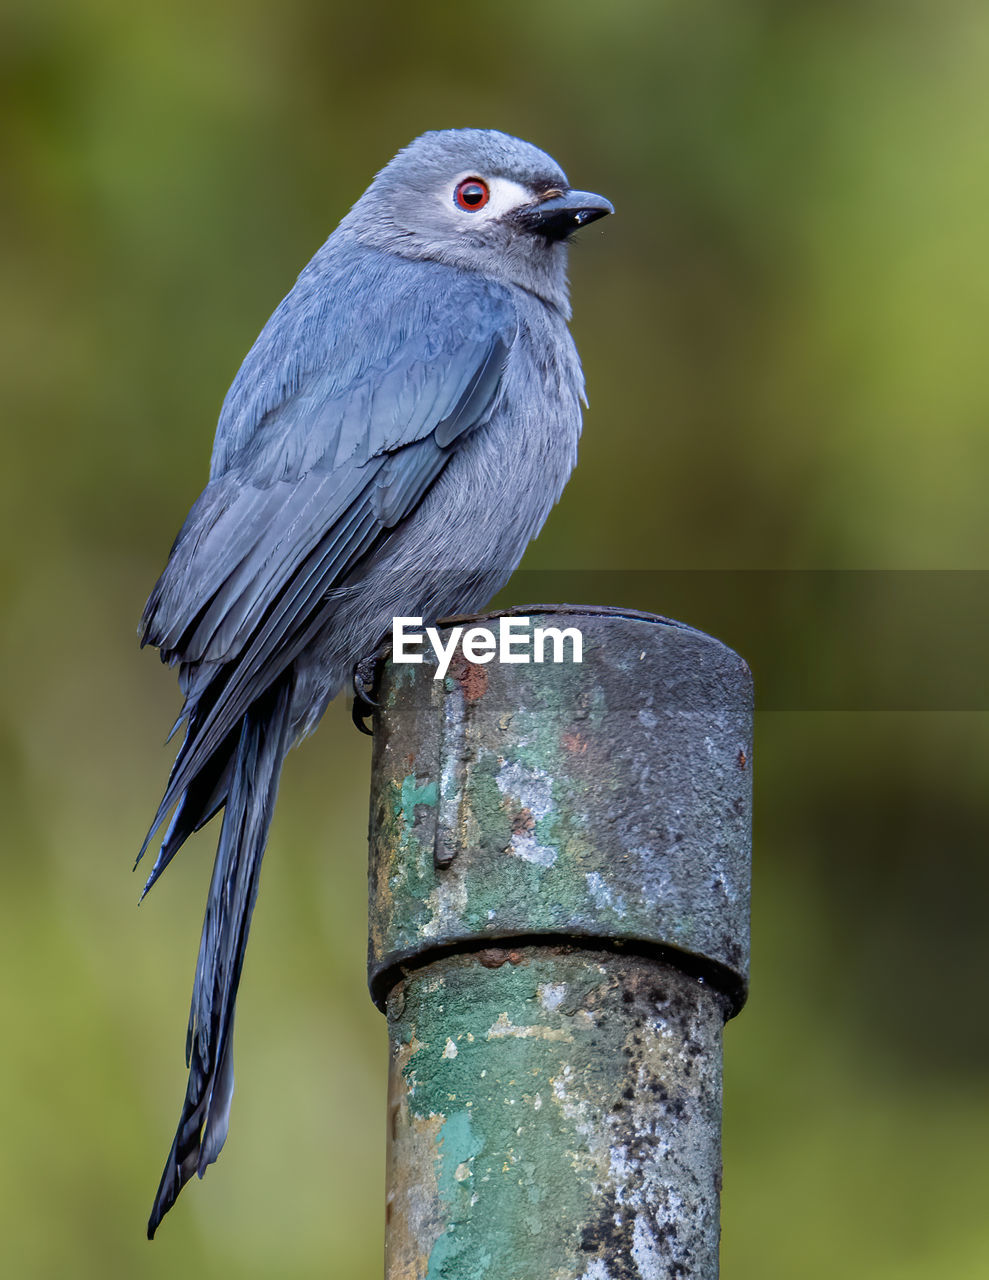 Nature wildlife image of an ashy drongo bird